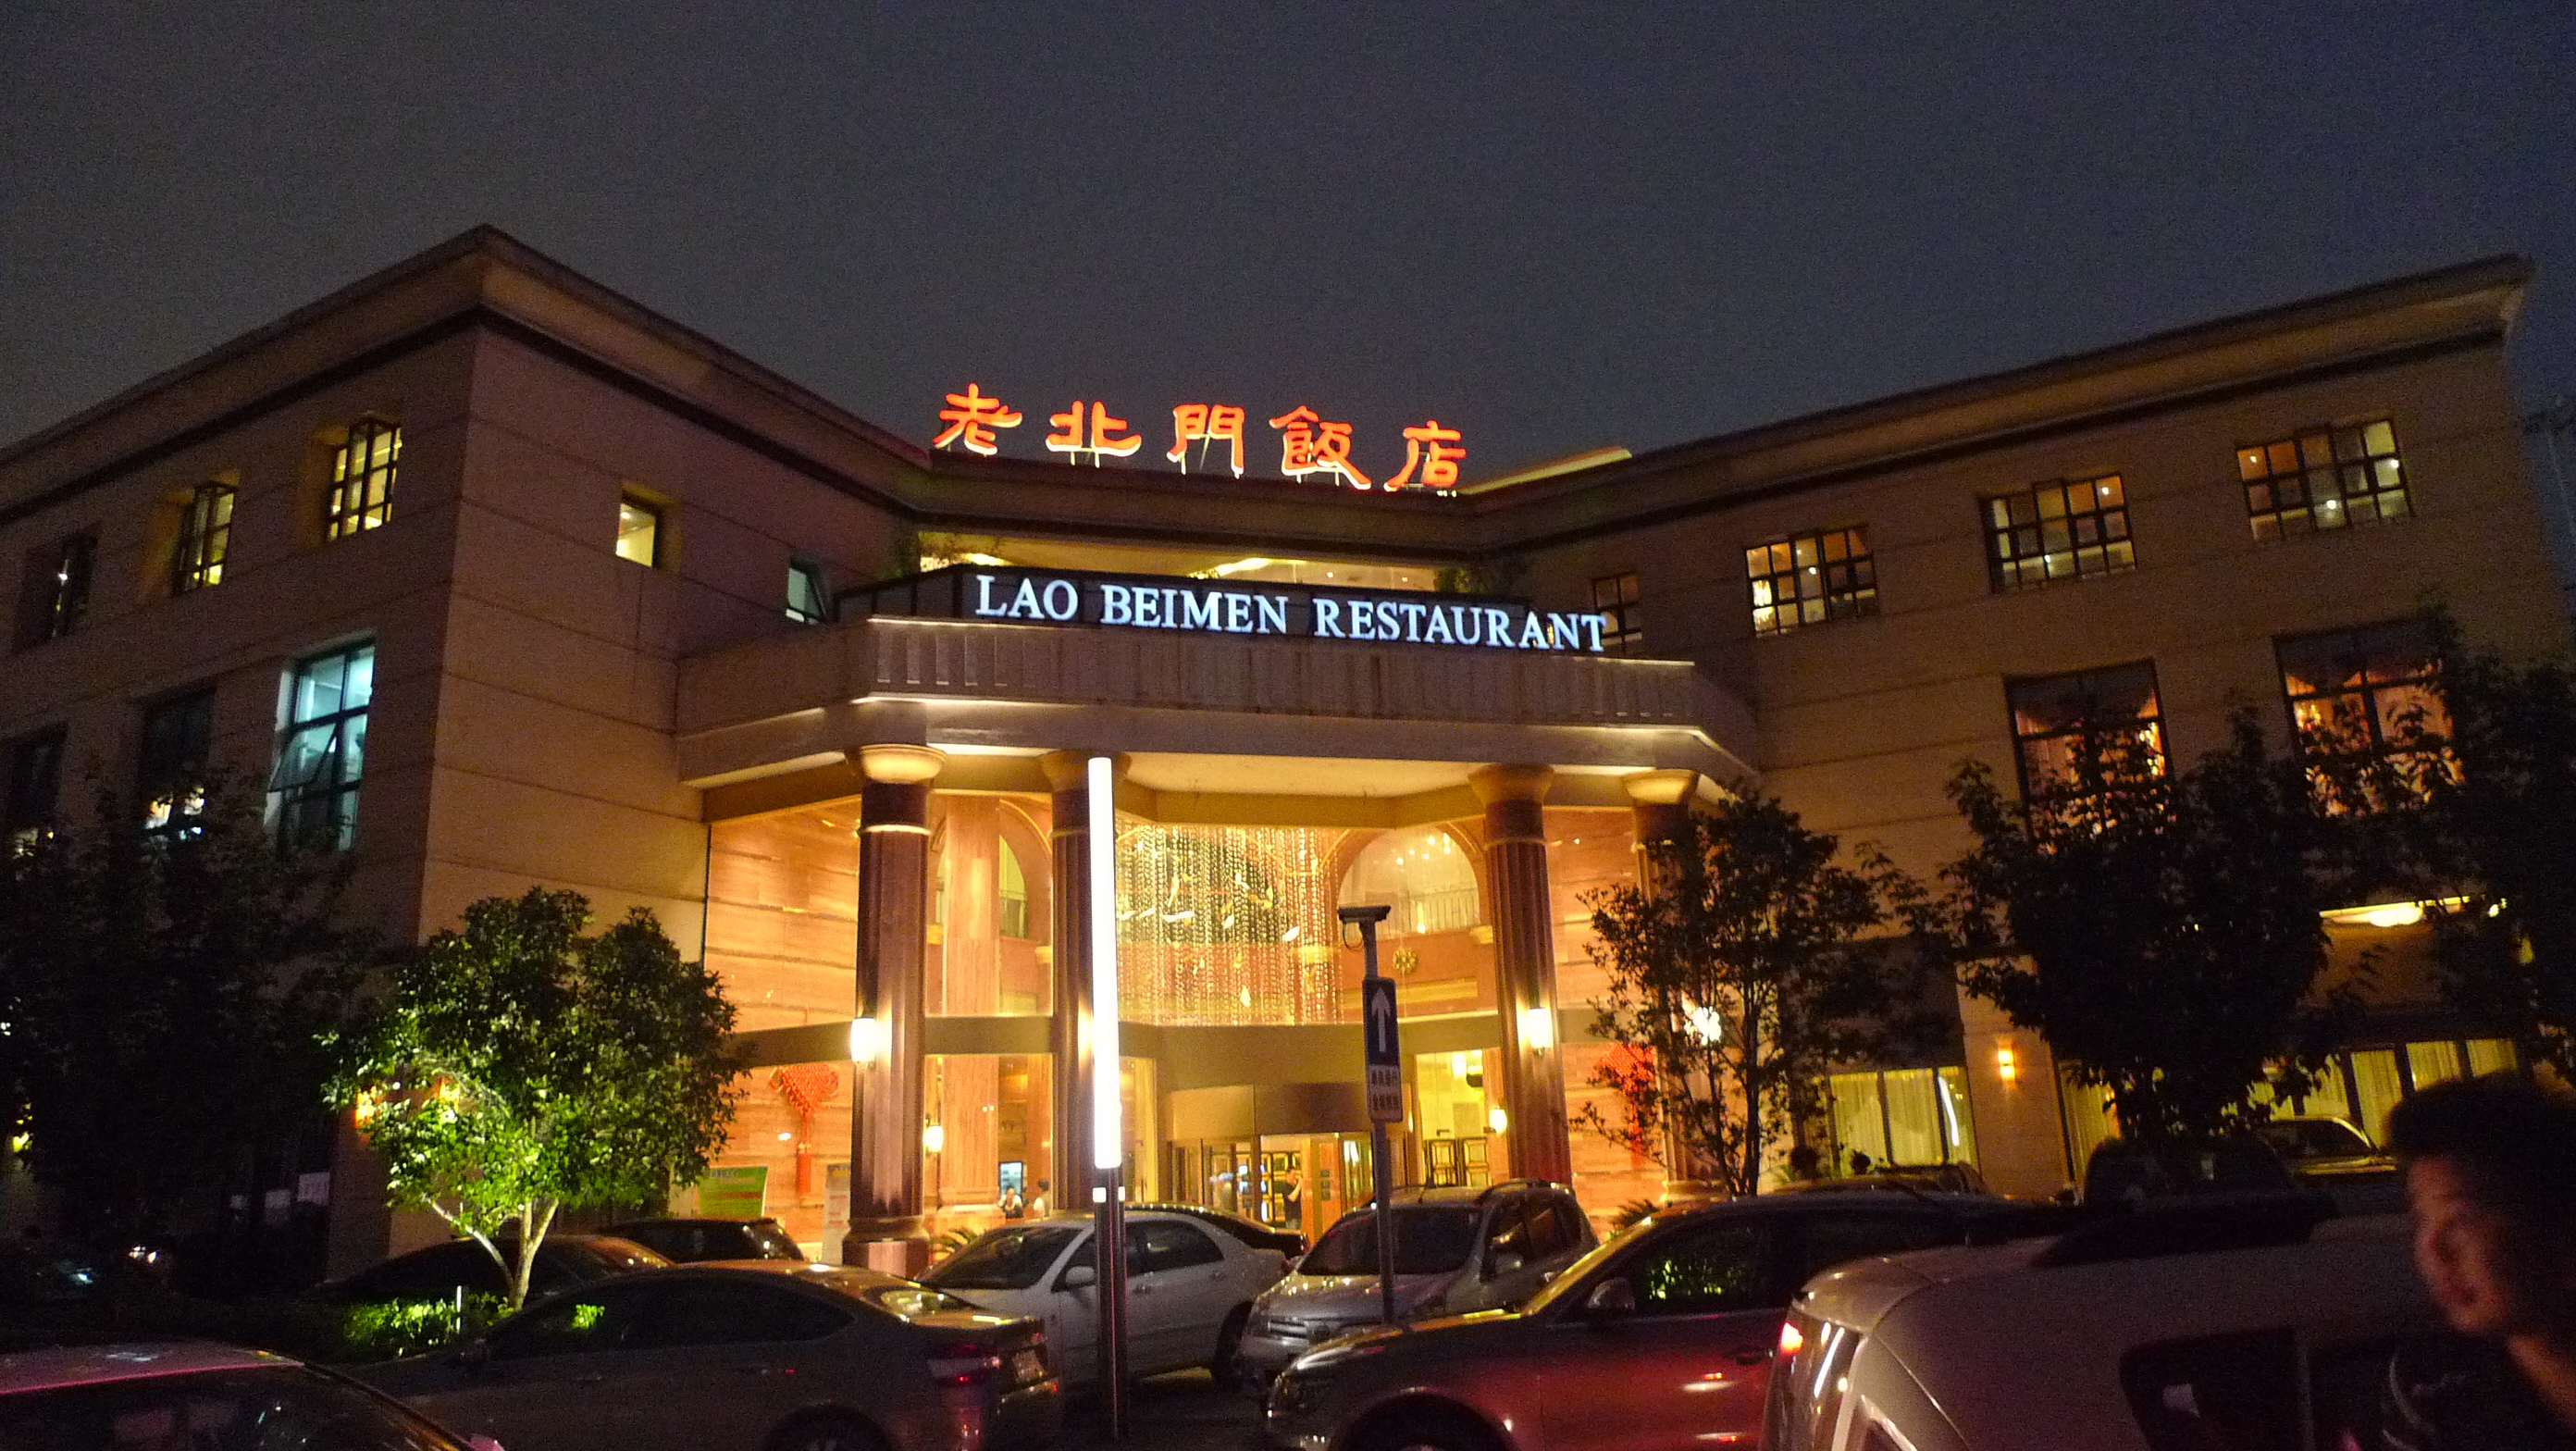 德胜门大街老北京餐馆图片